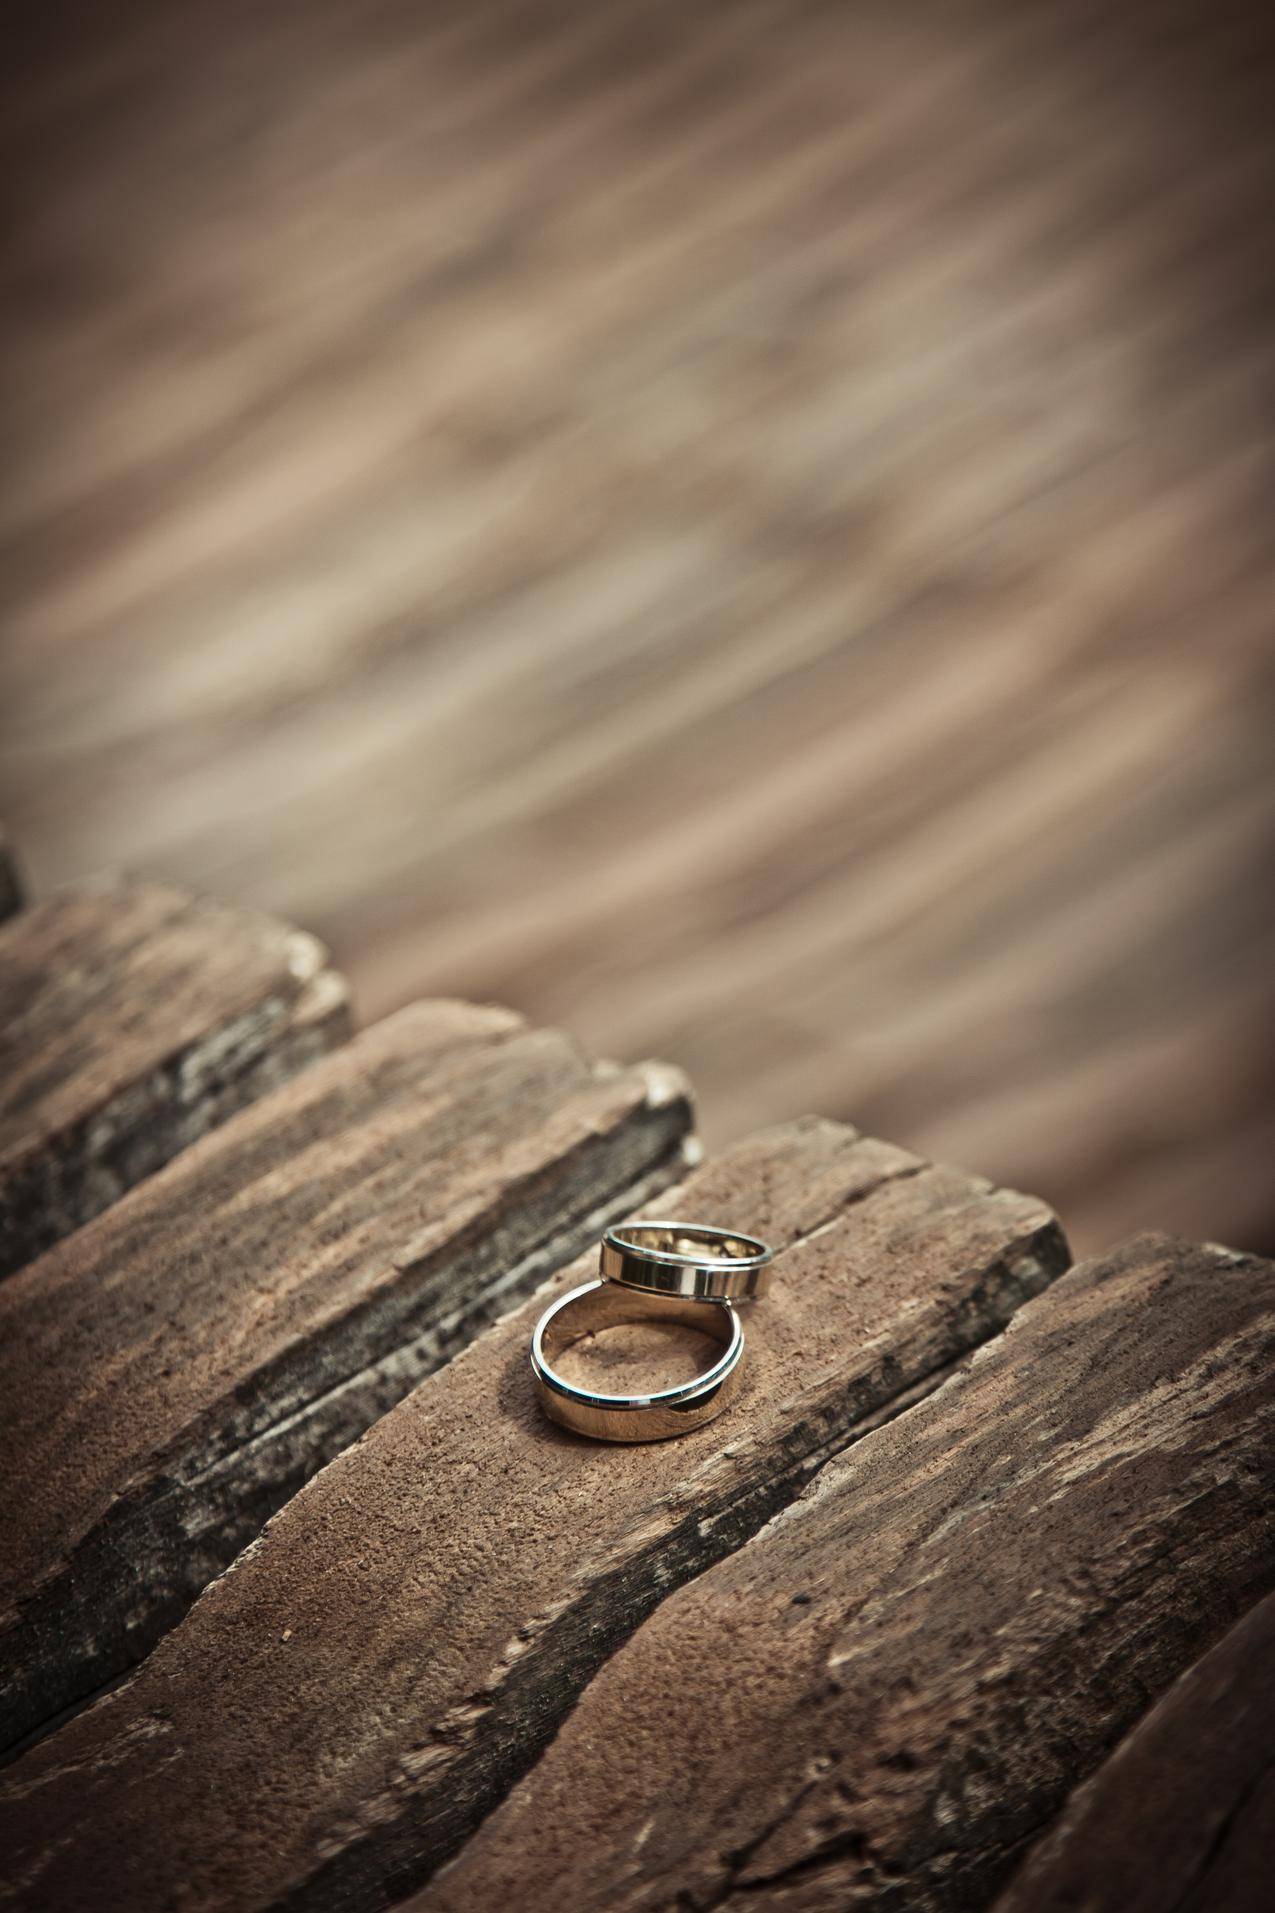 cc0可商用的木材照片,爱,黑暗,戒指